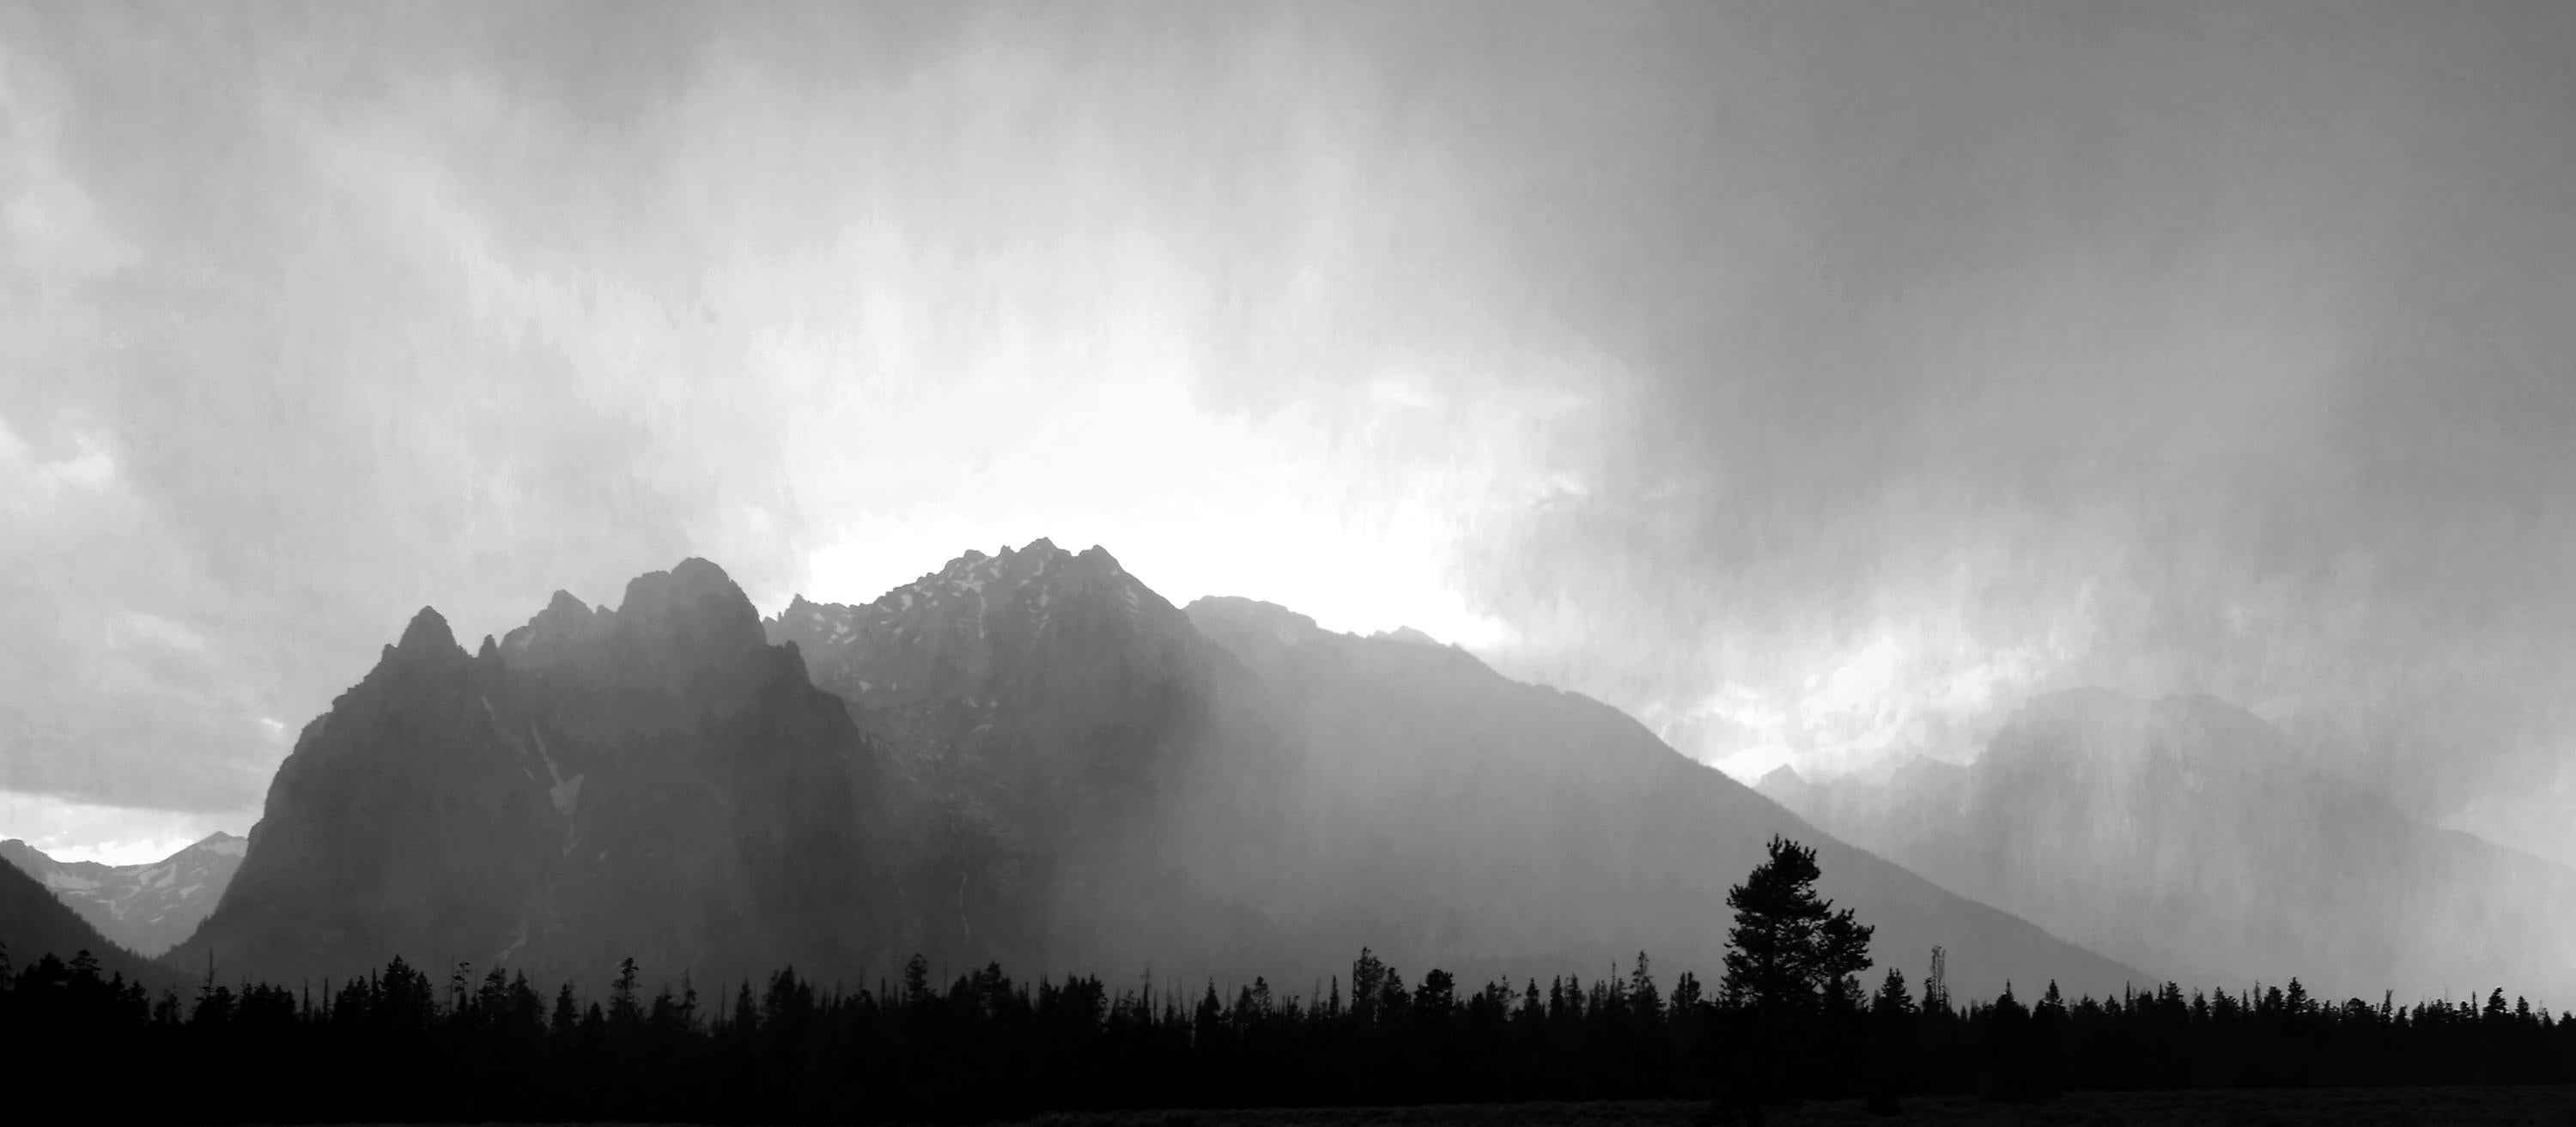 Chris Little Landscape Photograph - 'Guardians of the Tetons' - Black & White Photography - Landscape - Walker Evans